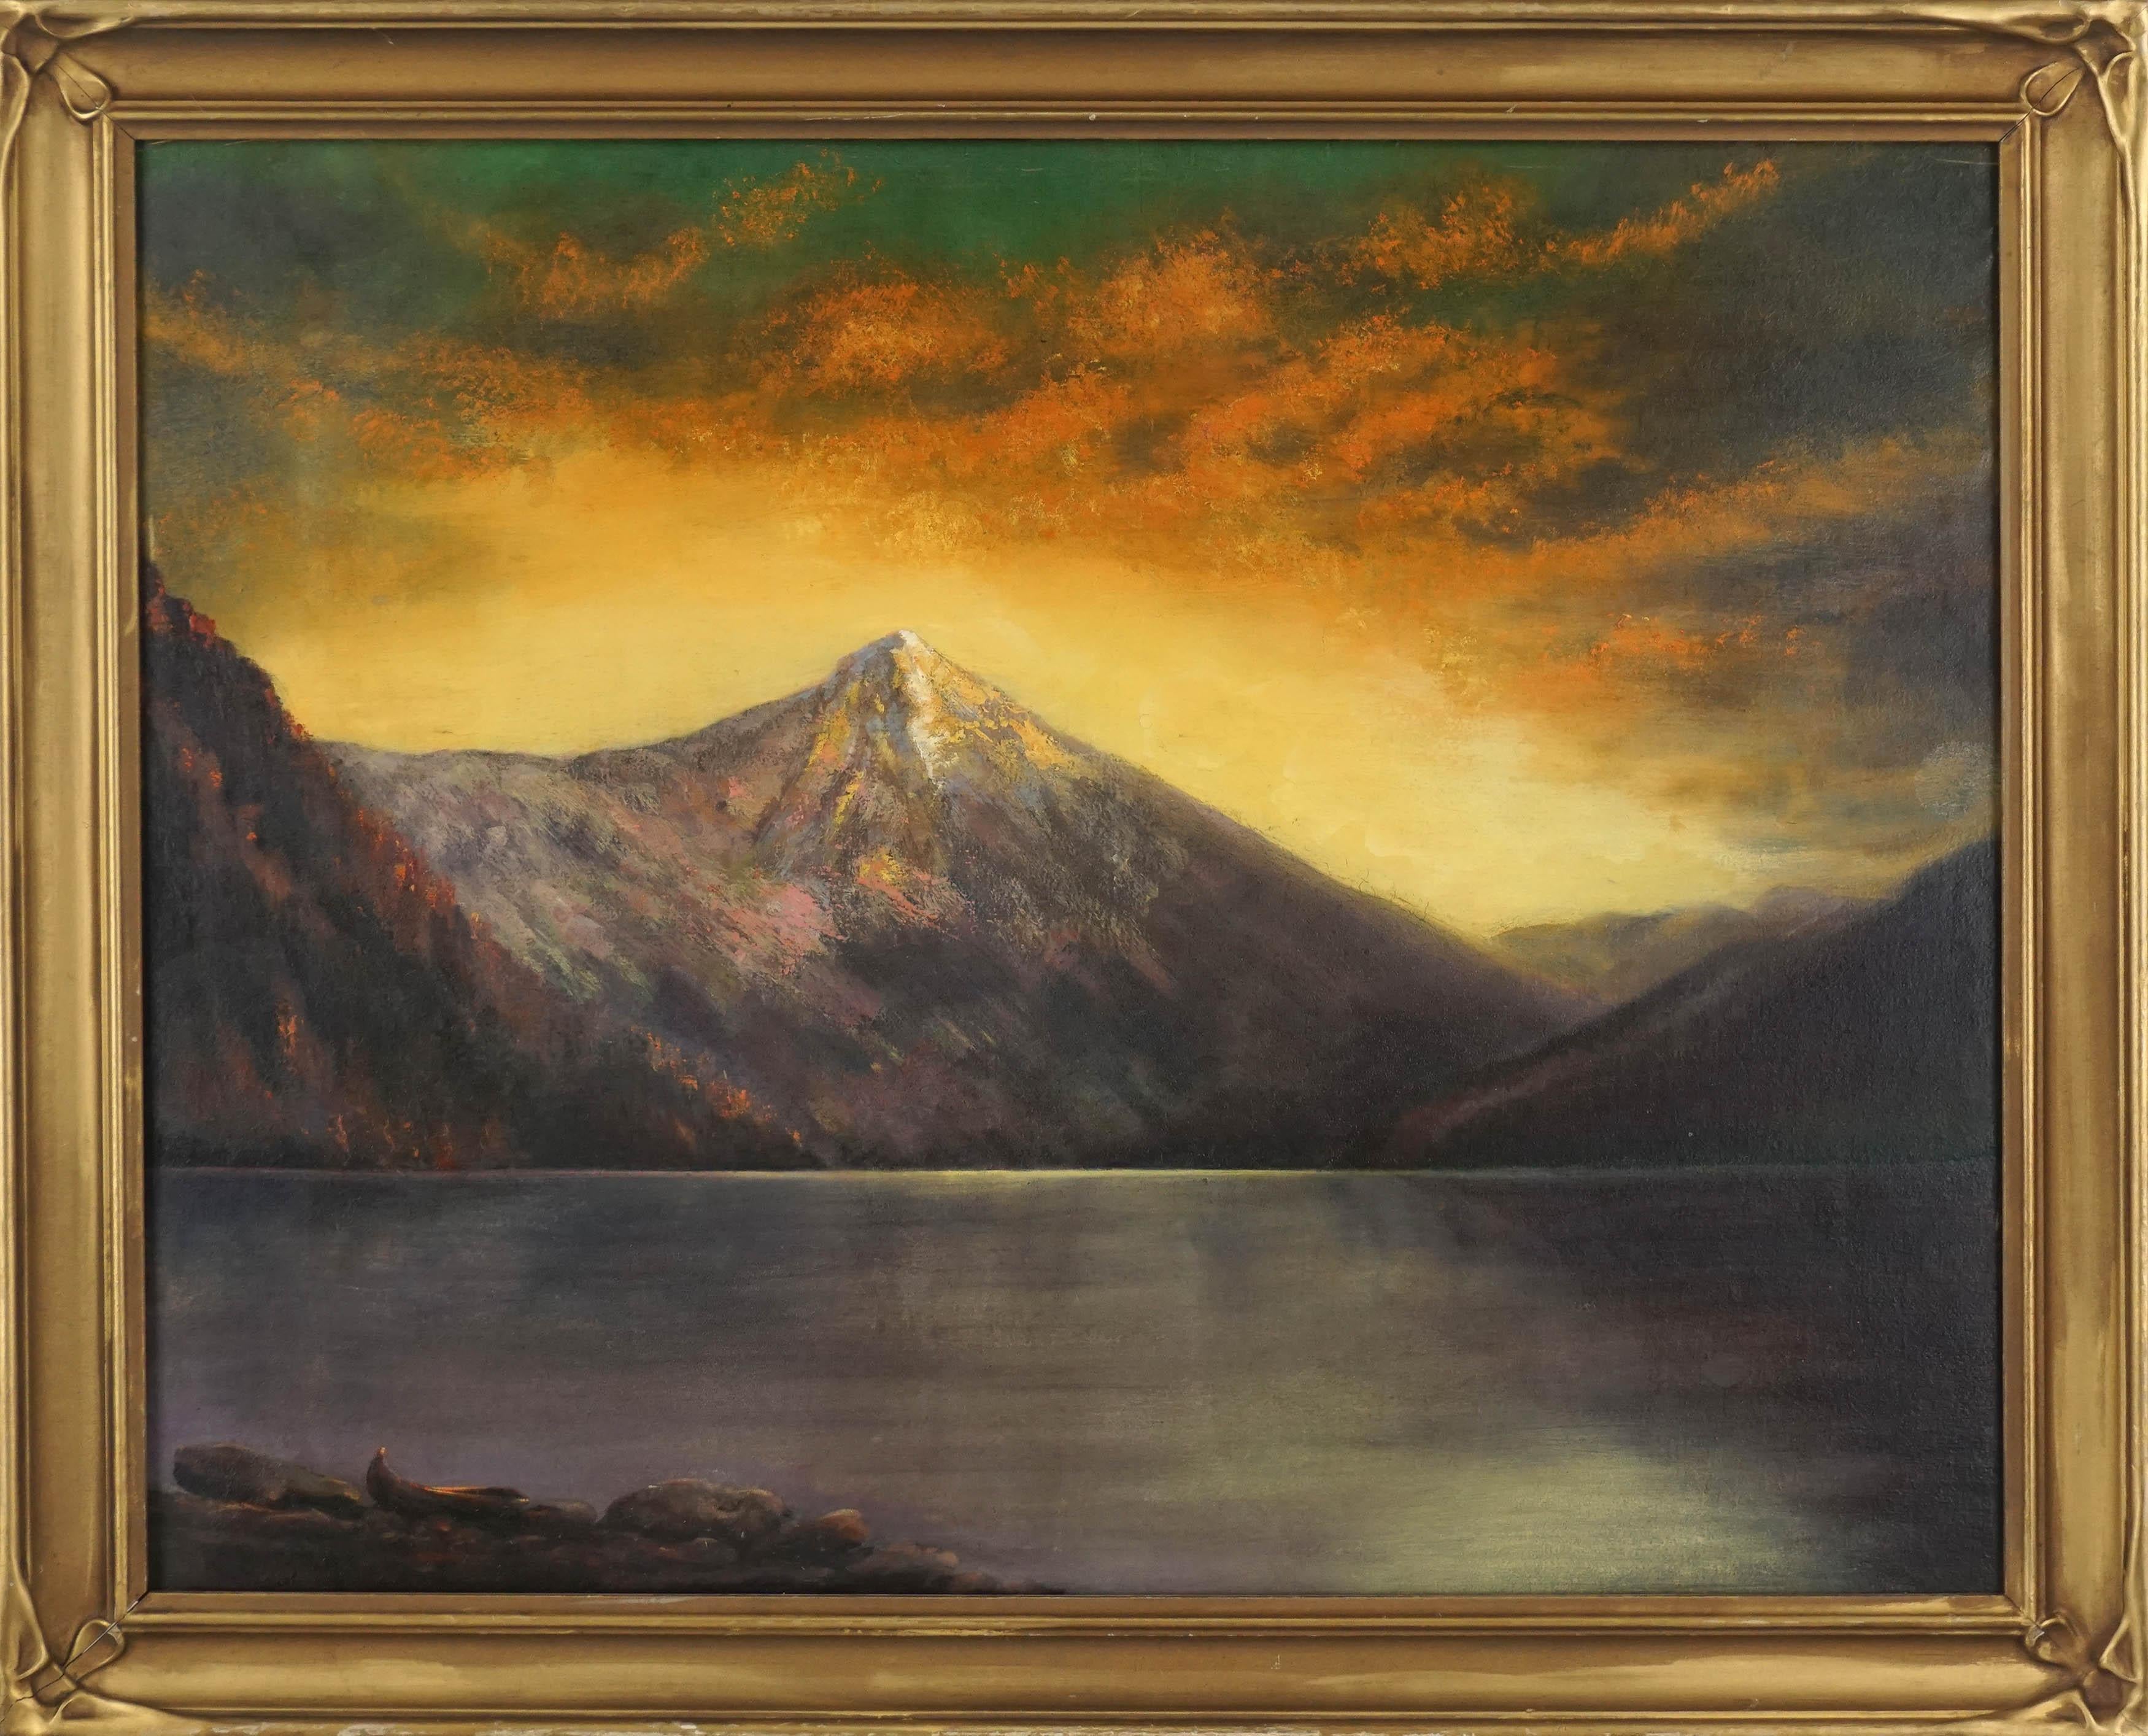 Alaska-Landschaft des frühen 20. Jahrhunderts – Stillsee mit Aurora Borealis